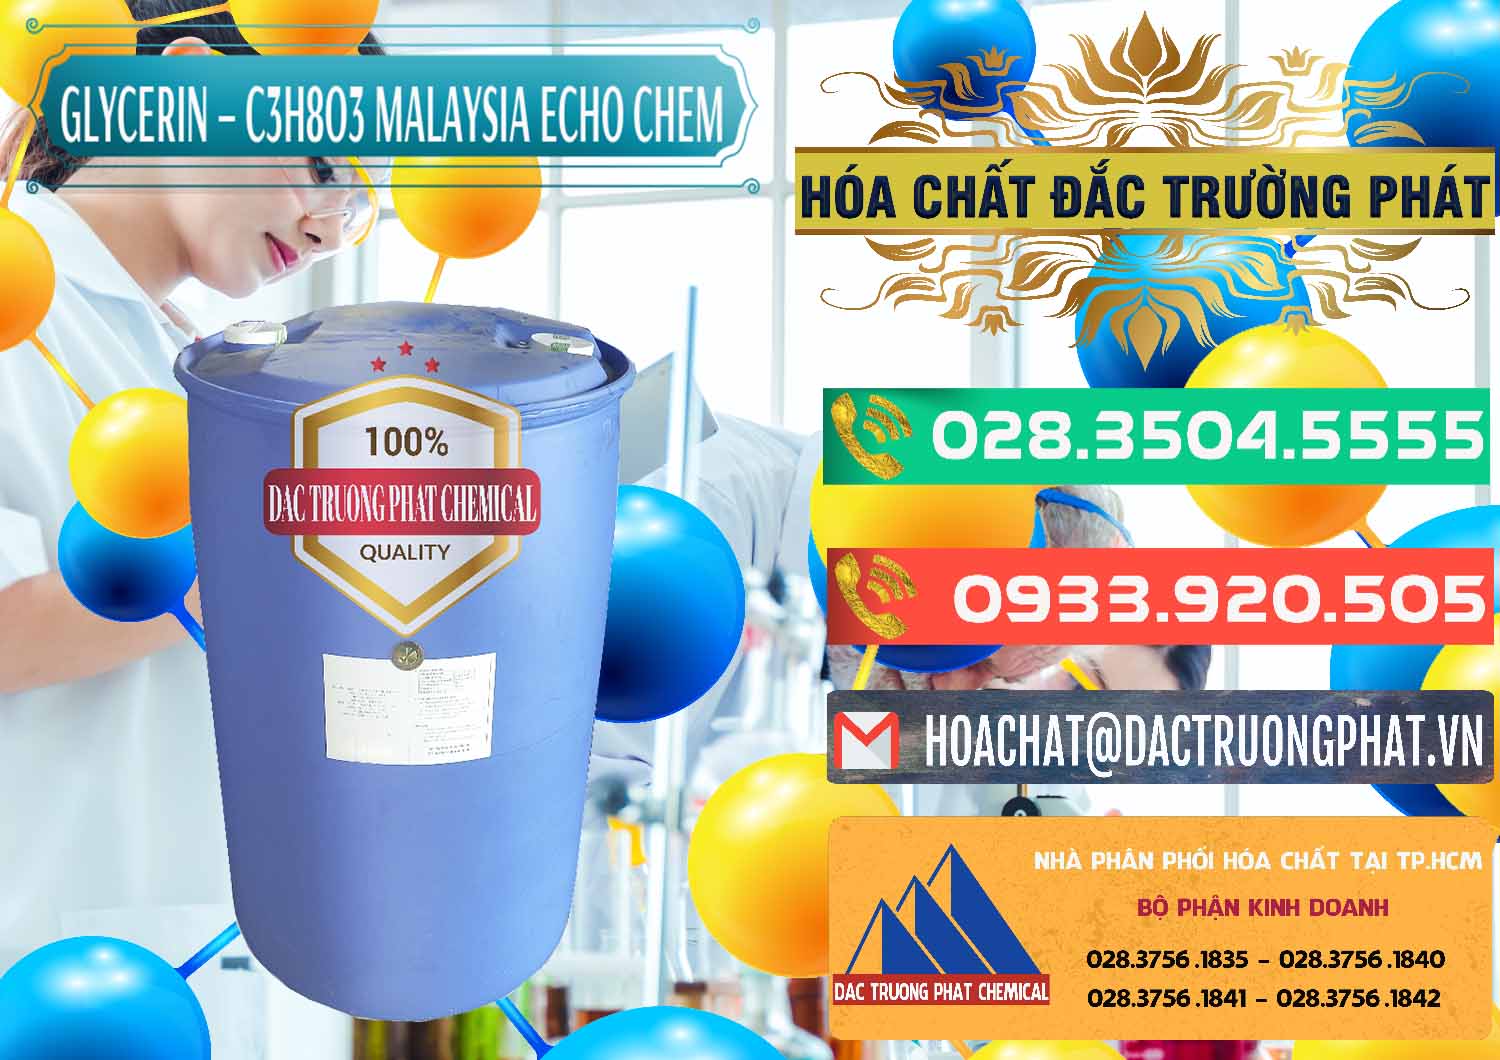 Đơn vị chuyên bán - cung ứng Glycerin – C3H8O3 99.7% Echo Chem Malaysia - 0273 - Công ty cung cấp & nhập khẩu hóa chất tại TP.HCM - congtyhoachat.com.vn